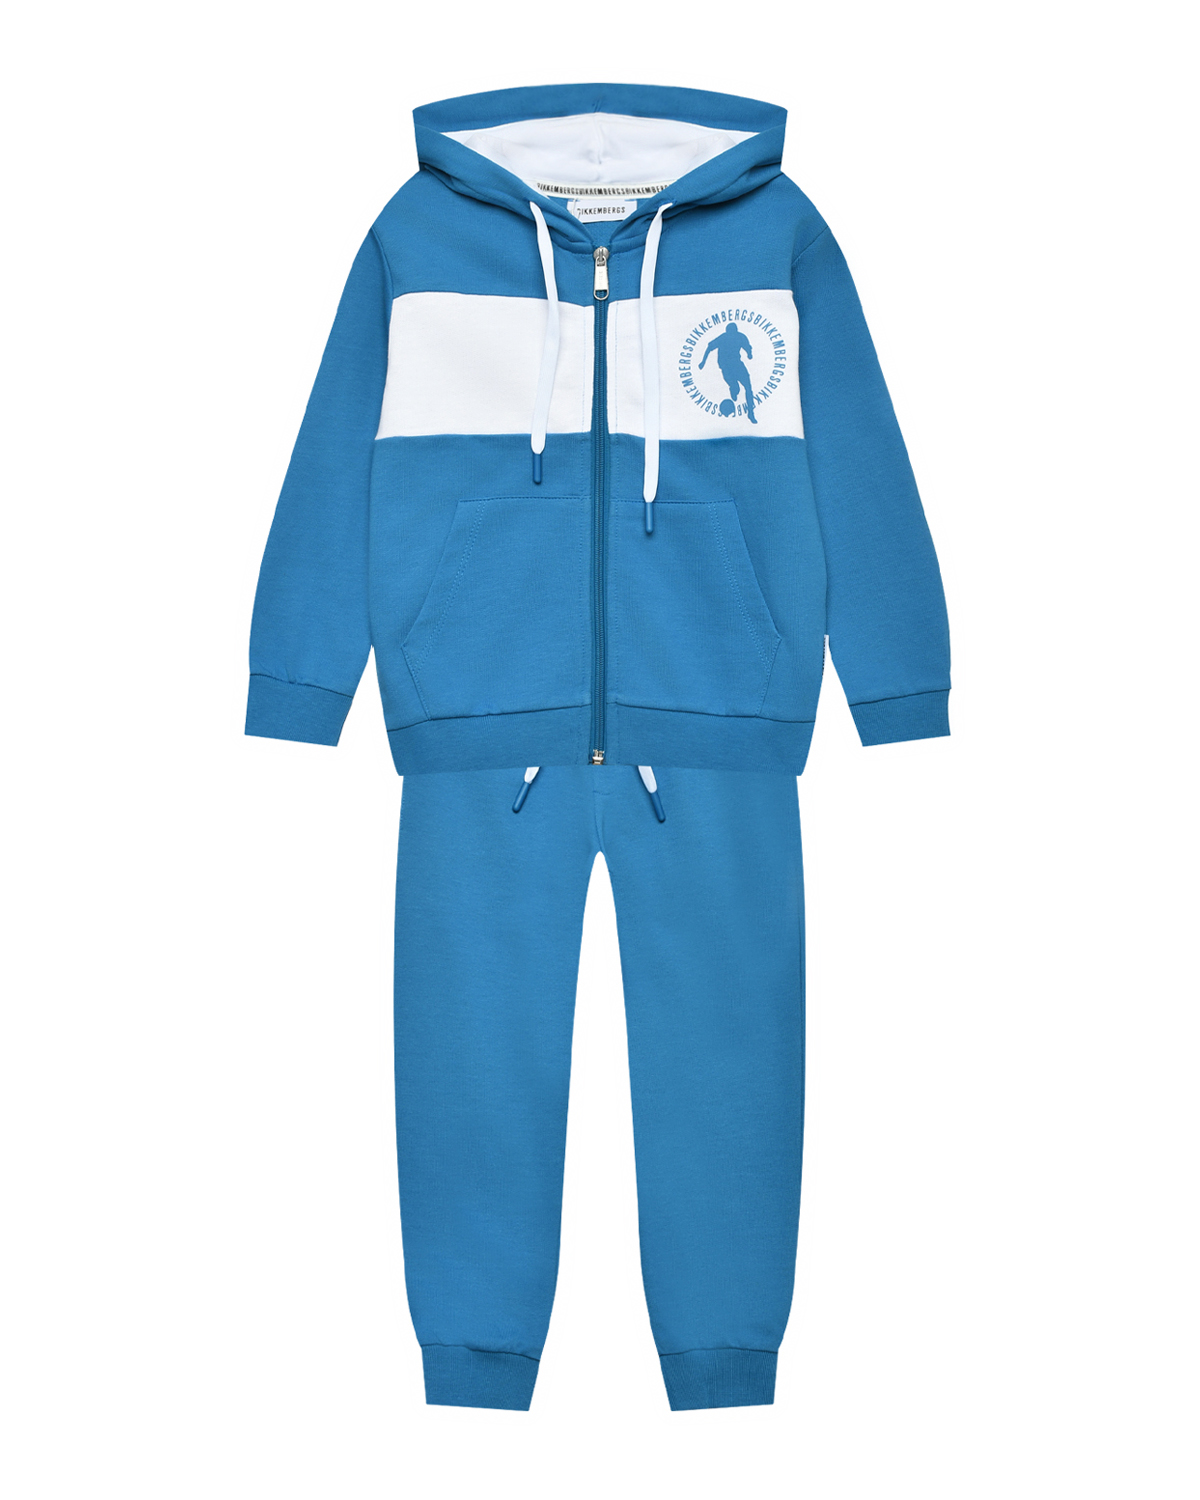 Спортивный костюм куртка с принтом футболиста + брюки, голубой Bikkembergs, размер 140, цвет нет цвета